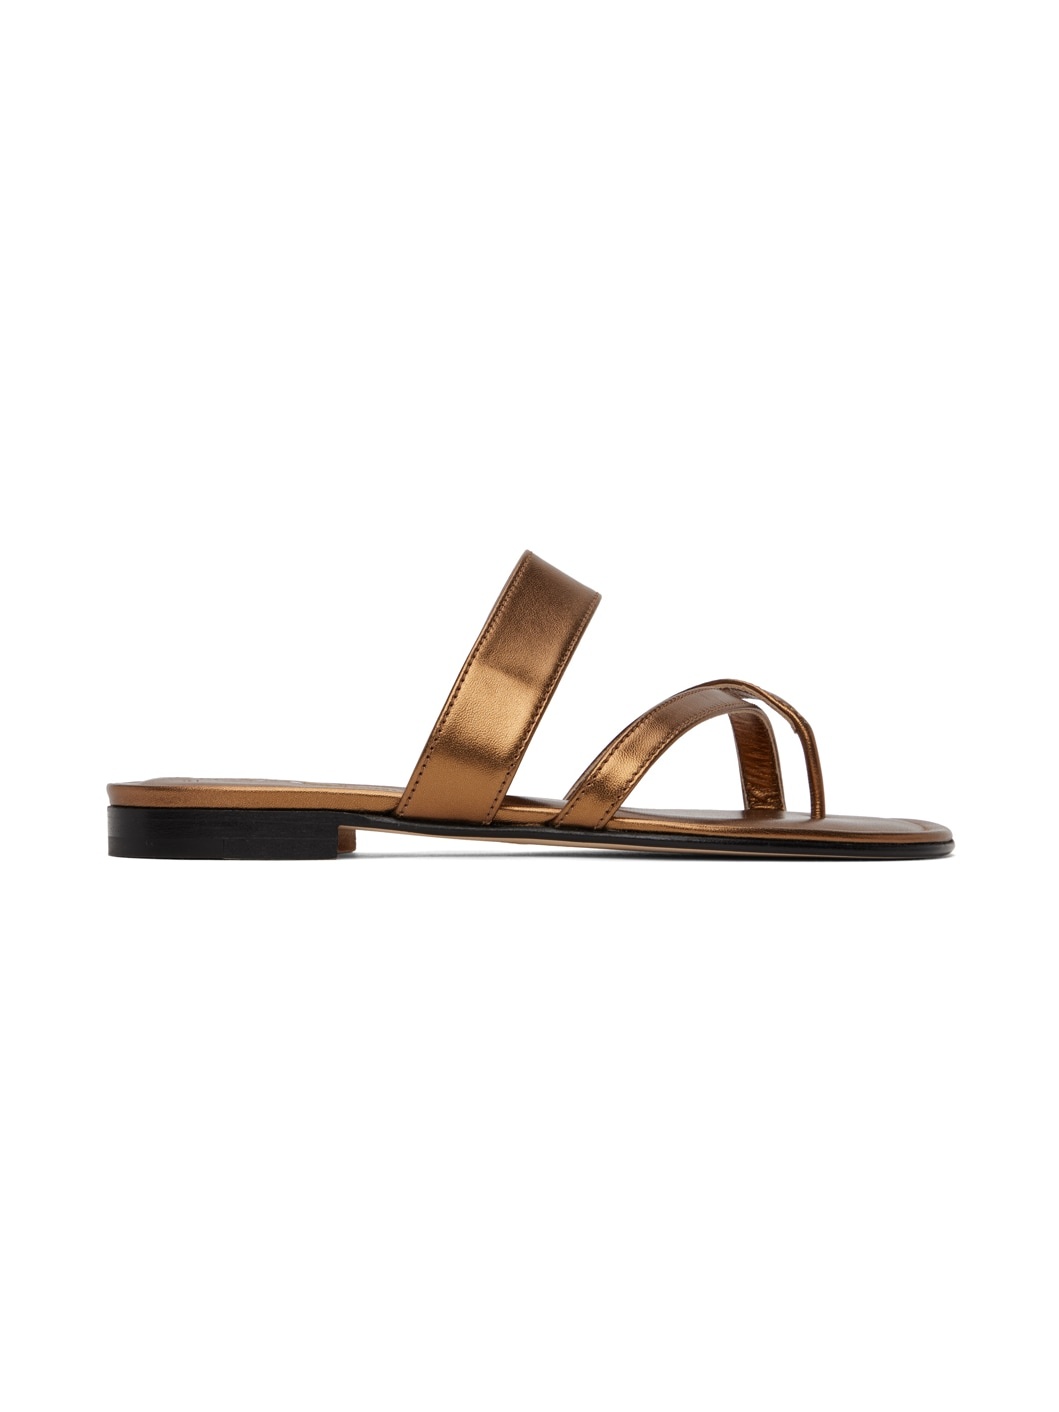 Bronze Susa Sandals - 1